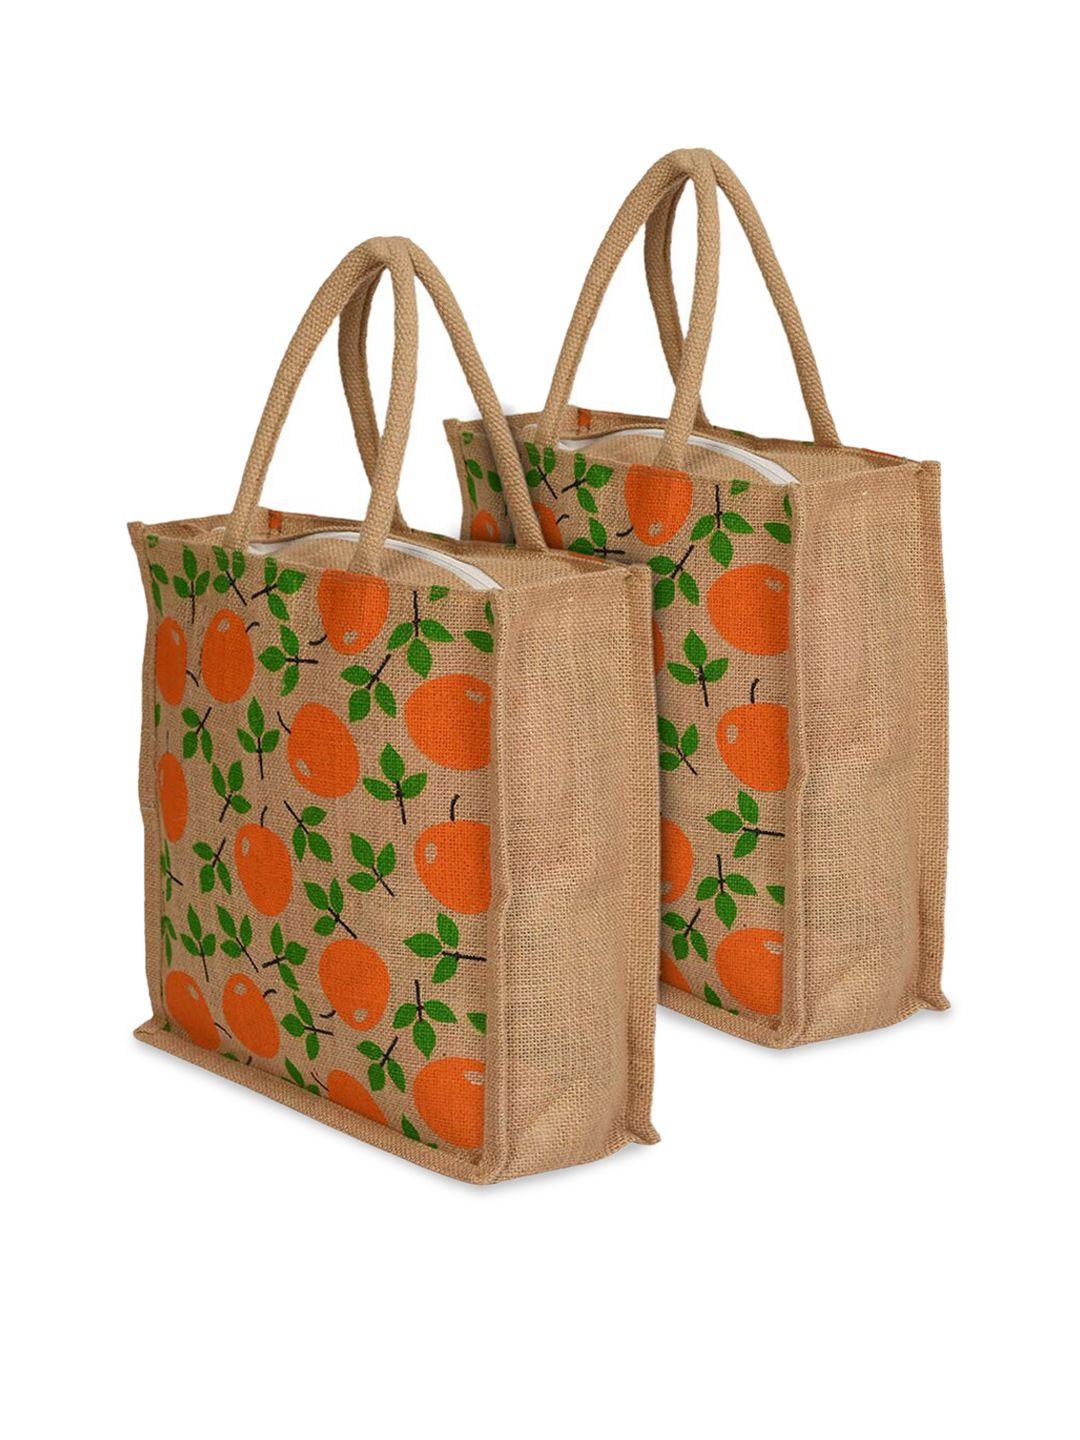 kuber industries pack of 2 floral printed swagger jute handheld bag